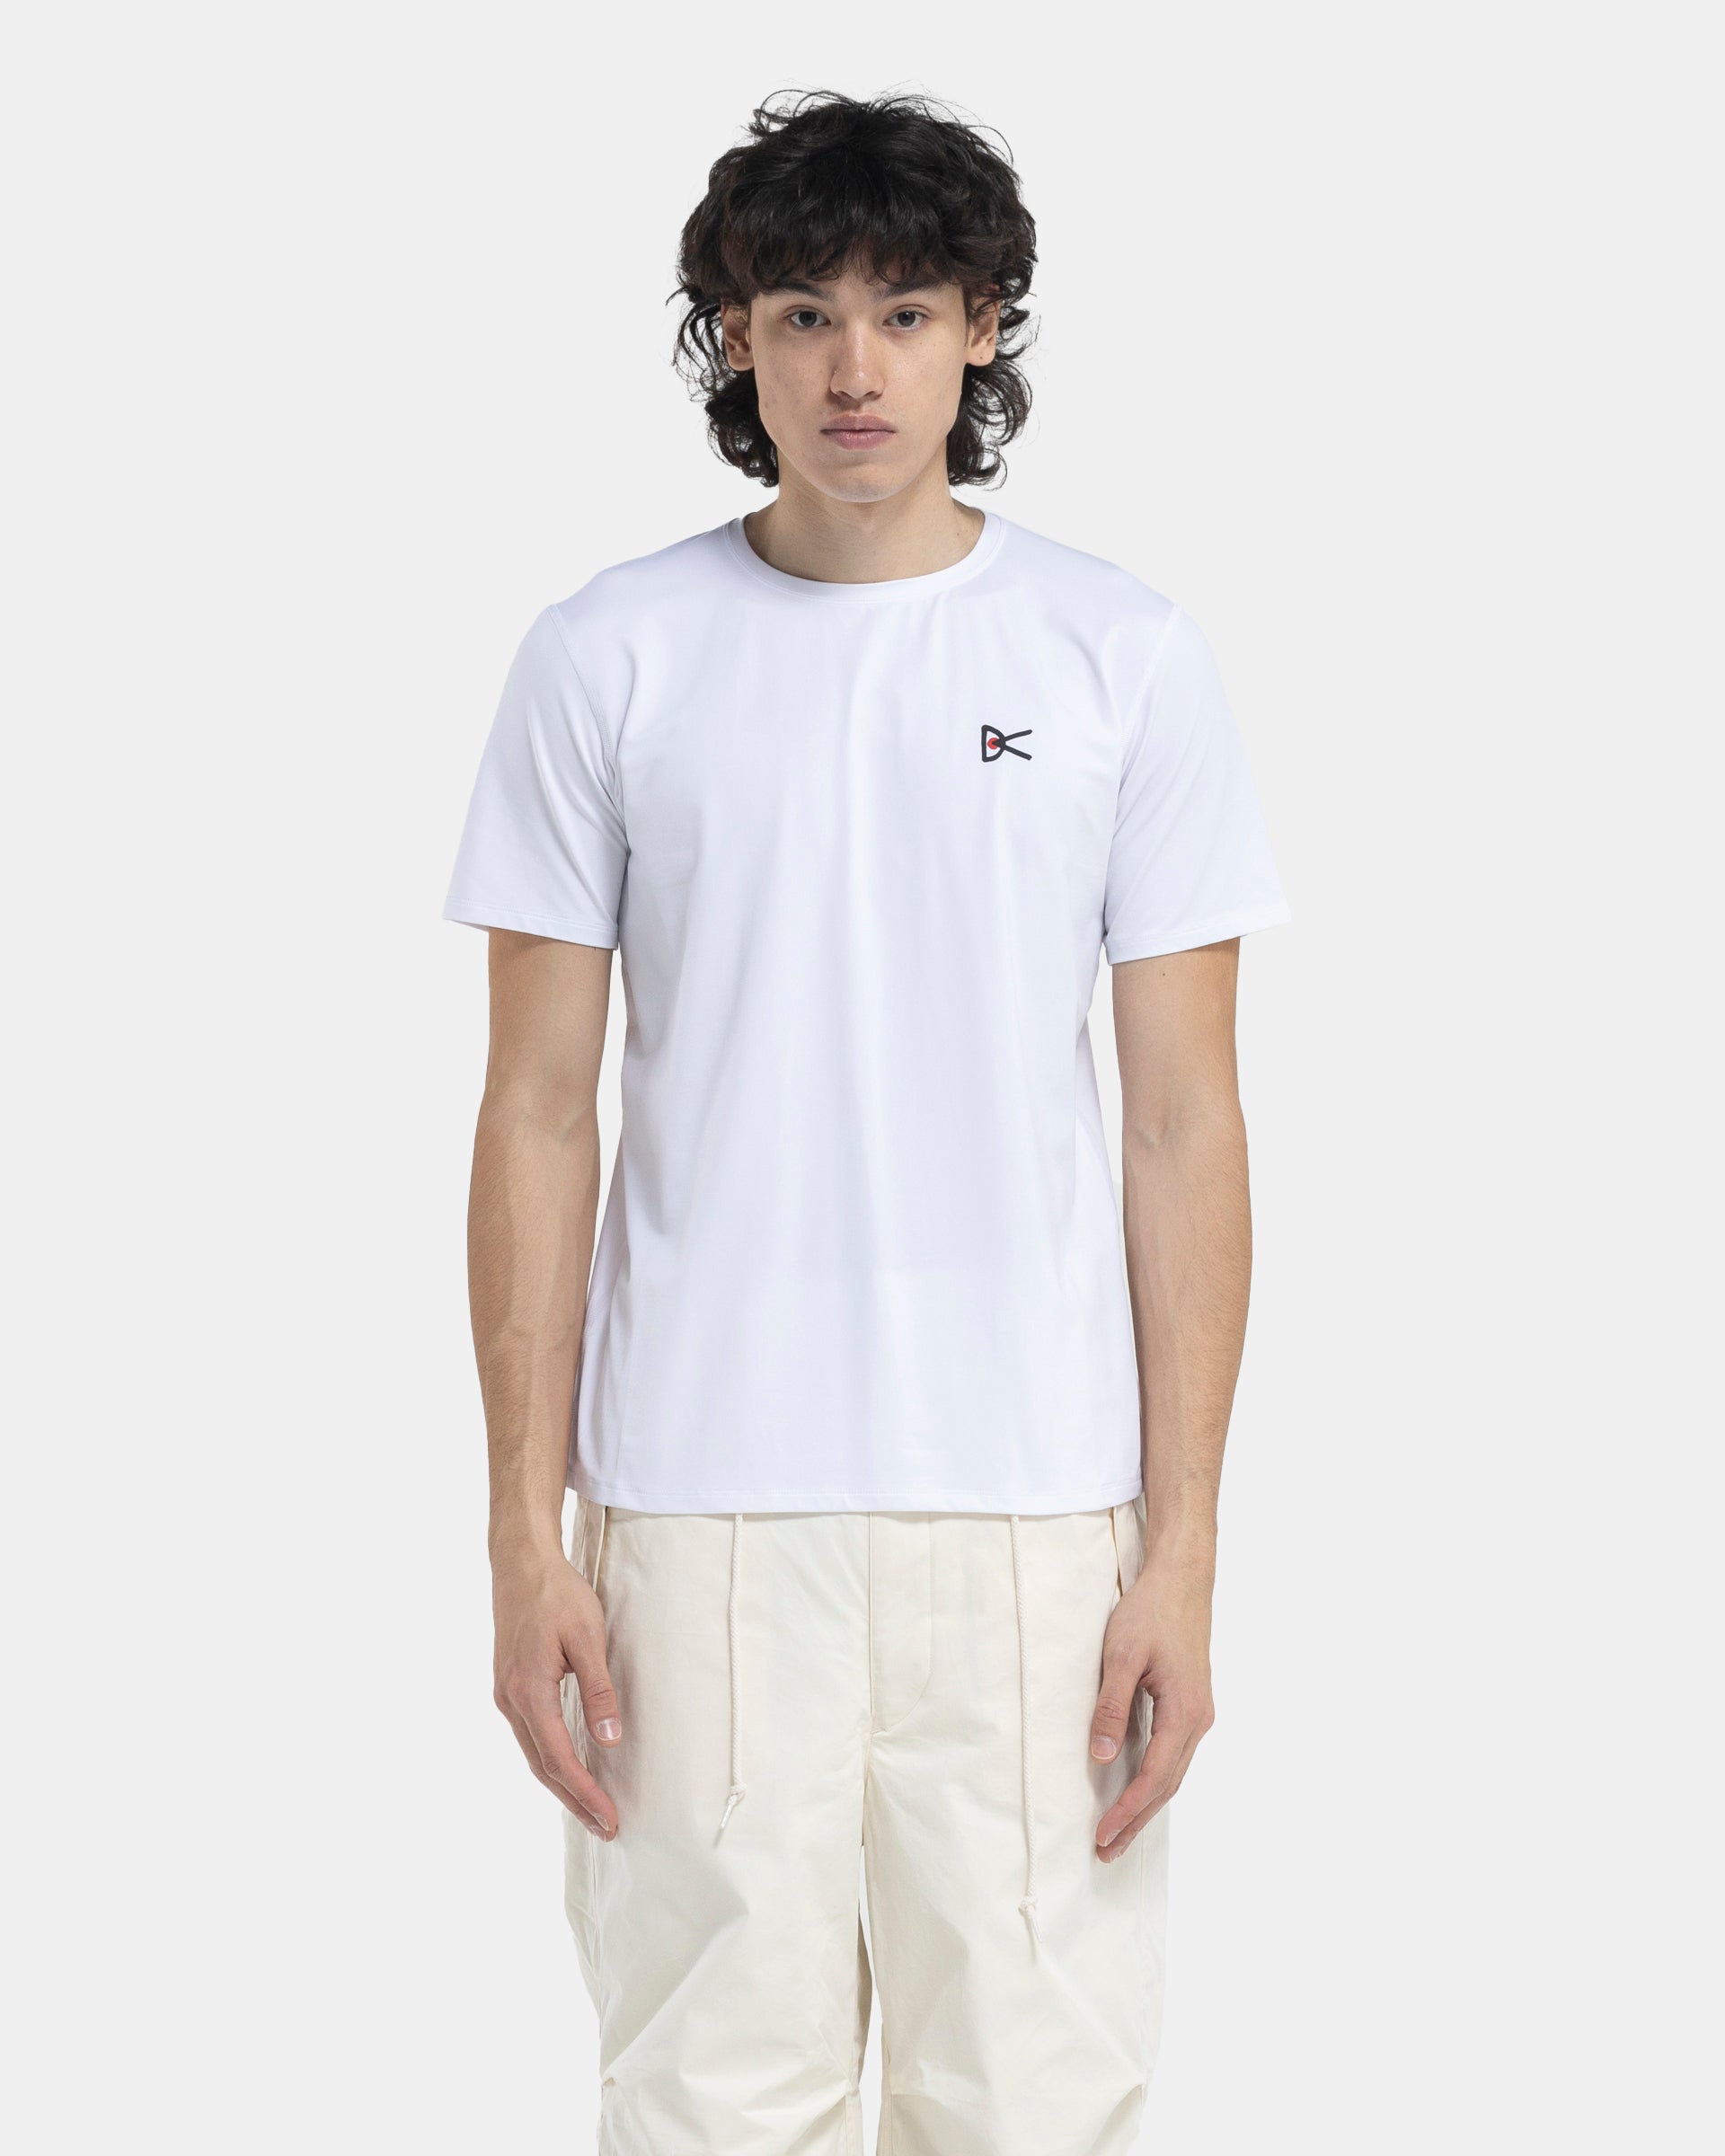 Deva Short Sleeve T-Shirt in White